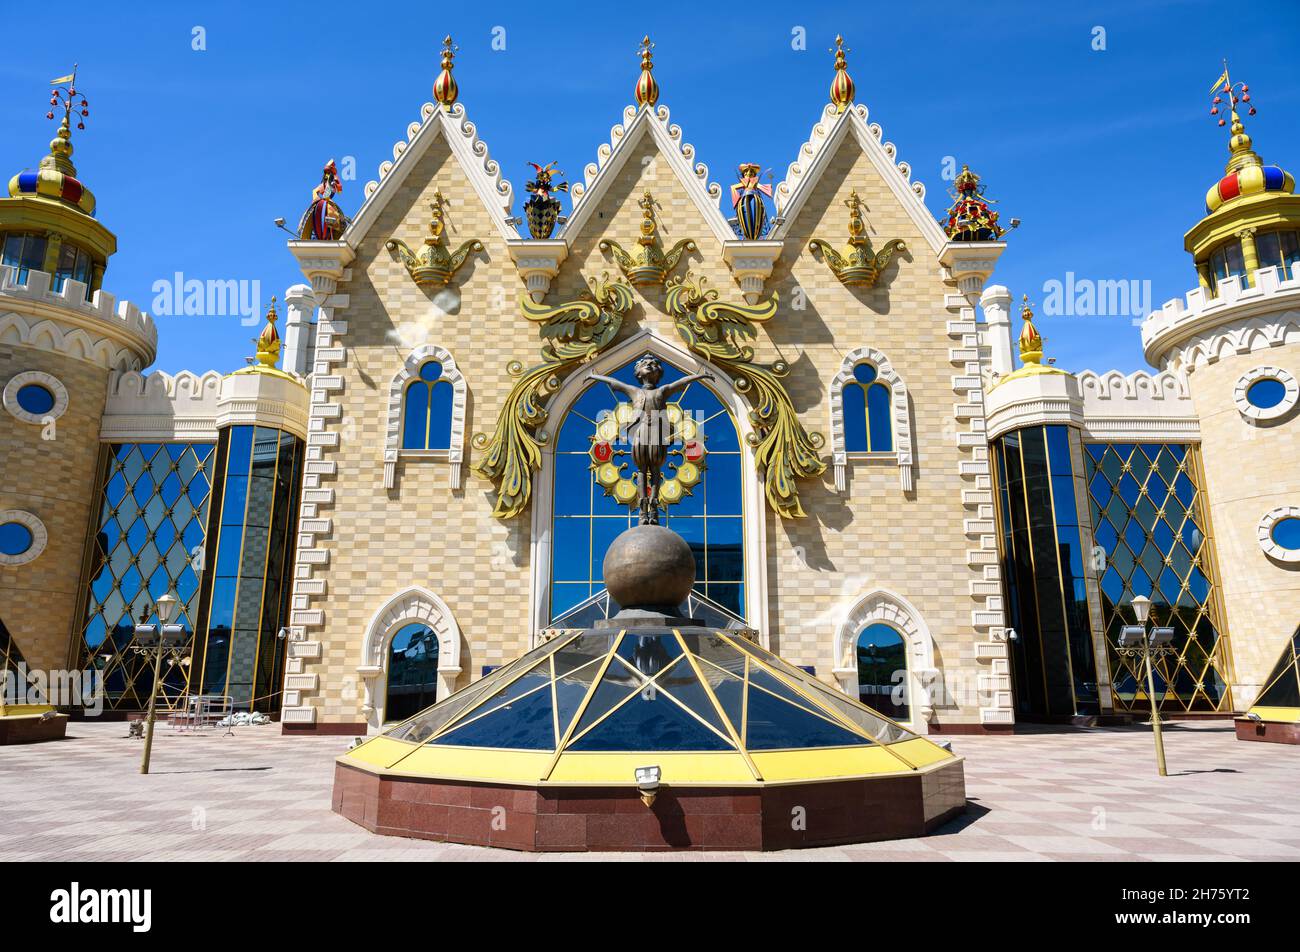 Théâtre de marionnettes de l'État de Tatar Ekiyat, Kazan, Tatarstan, Russie.C'est un monument historique de Kazan.Vue de face d'un beau bâtiment, palais de conte de fées pour enfants Banque D'Images